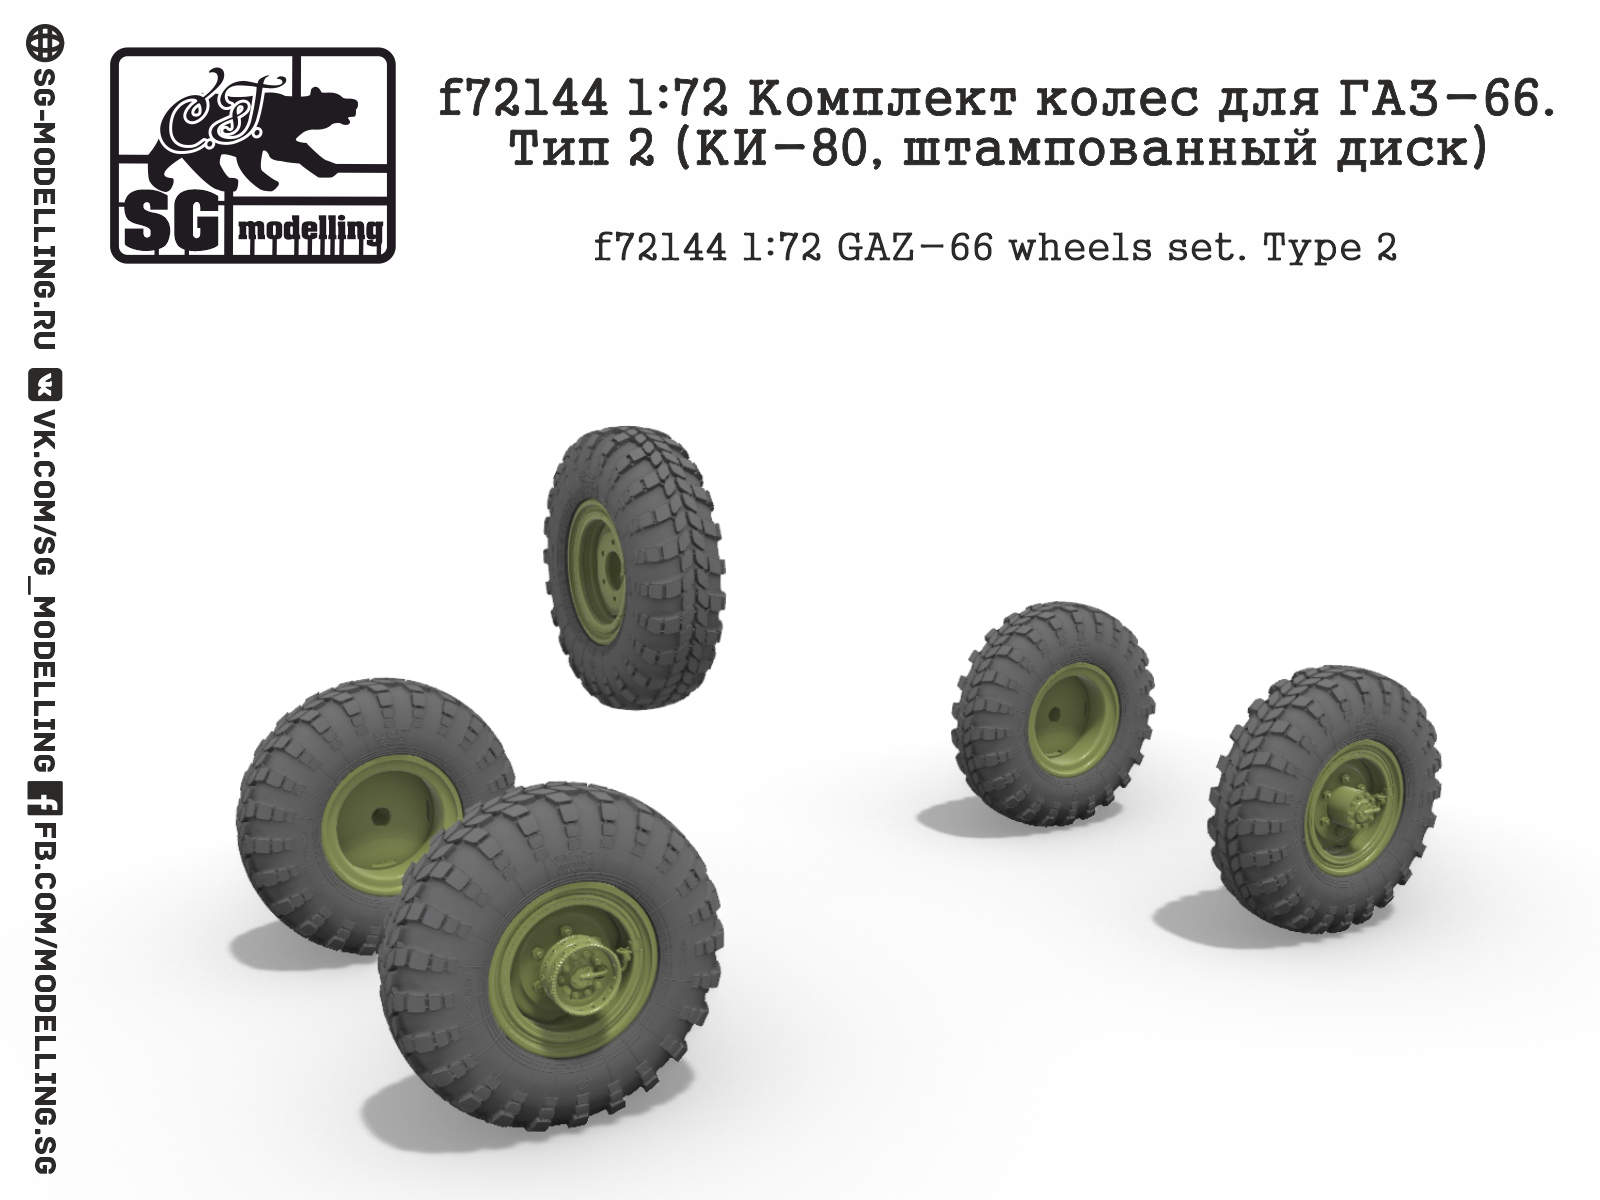 f72144  дополнения из смолы  Комплект колес для Г@З-66. Тип 2 (КИ-80, штампованный диск)  (1:72)